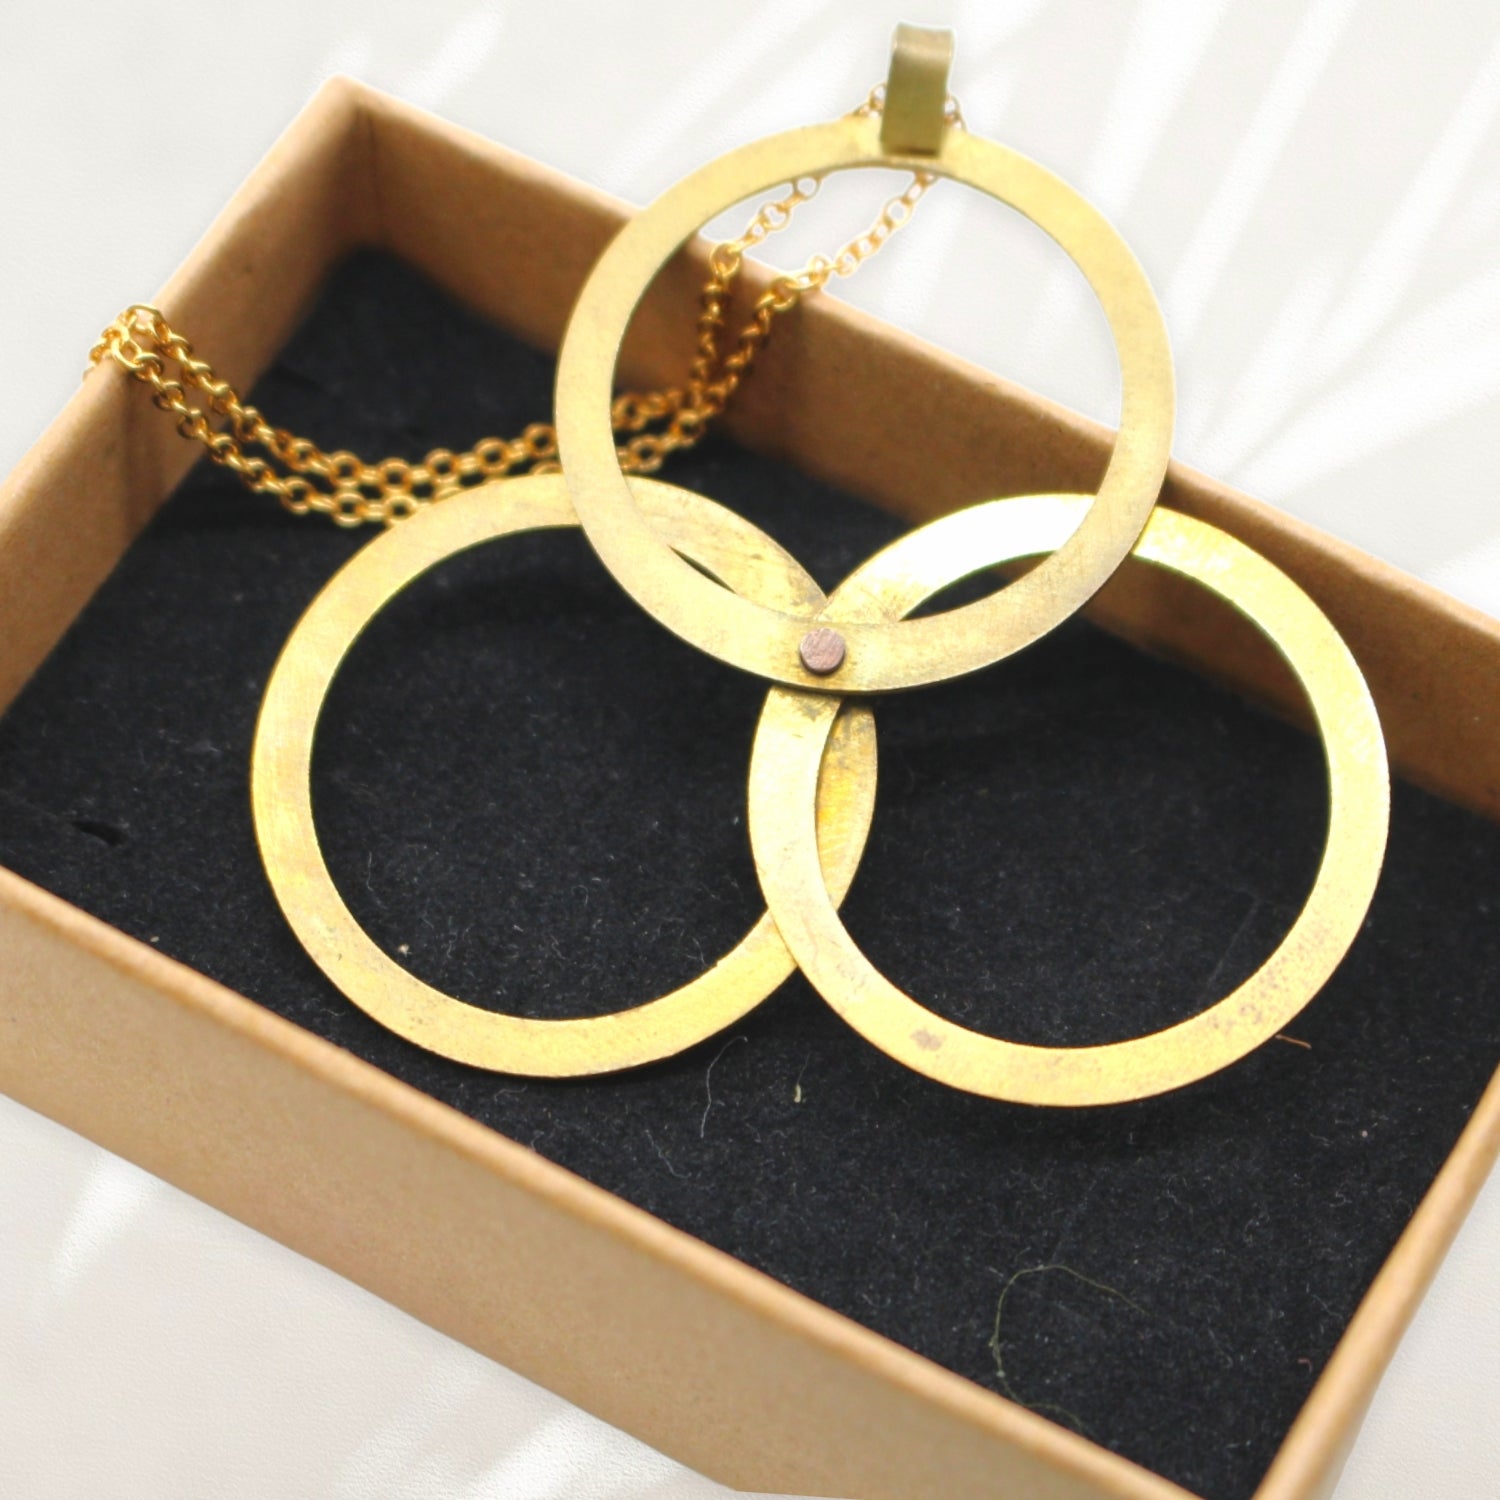 Brass Innovation Trinity Pendant Necklace By Pivot